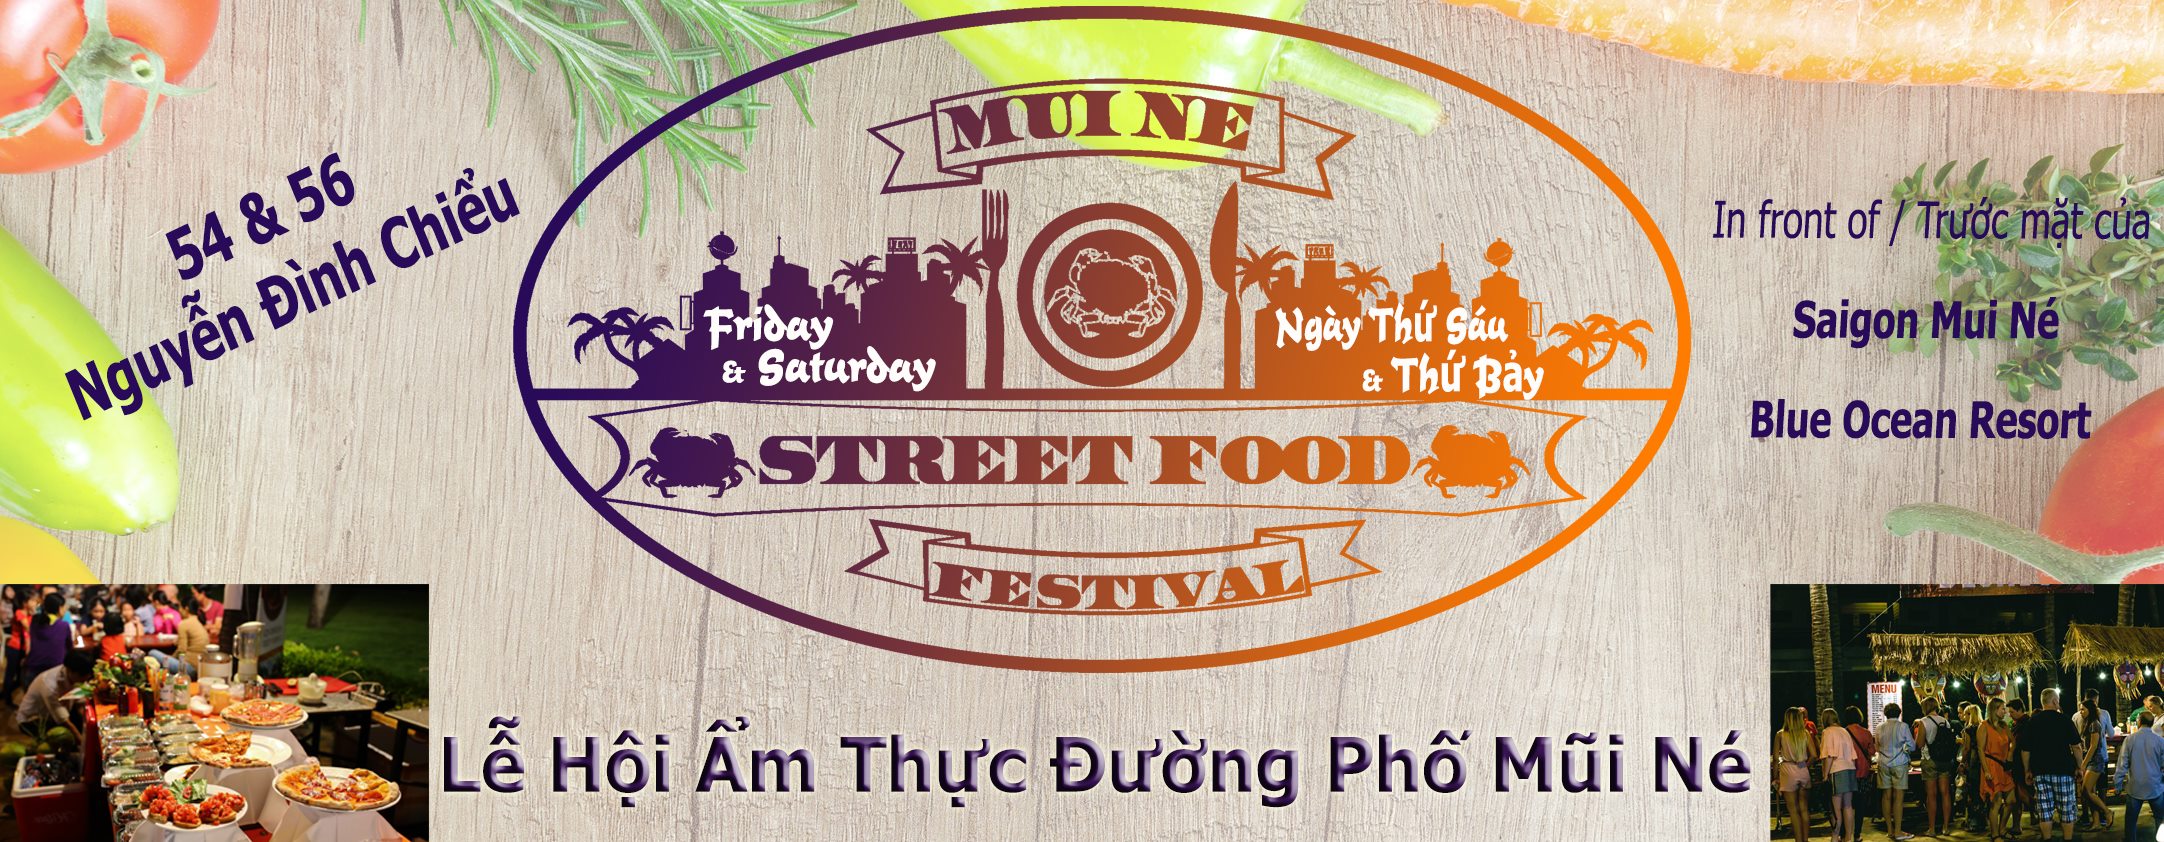 Lễ hội ẩm thực đường phố Mũi Né - Street food festival